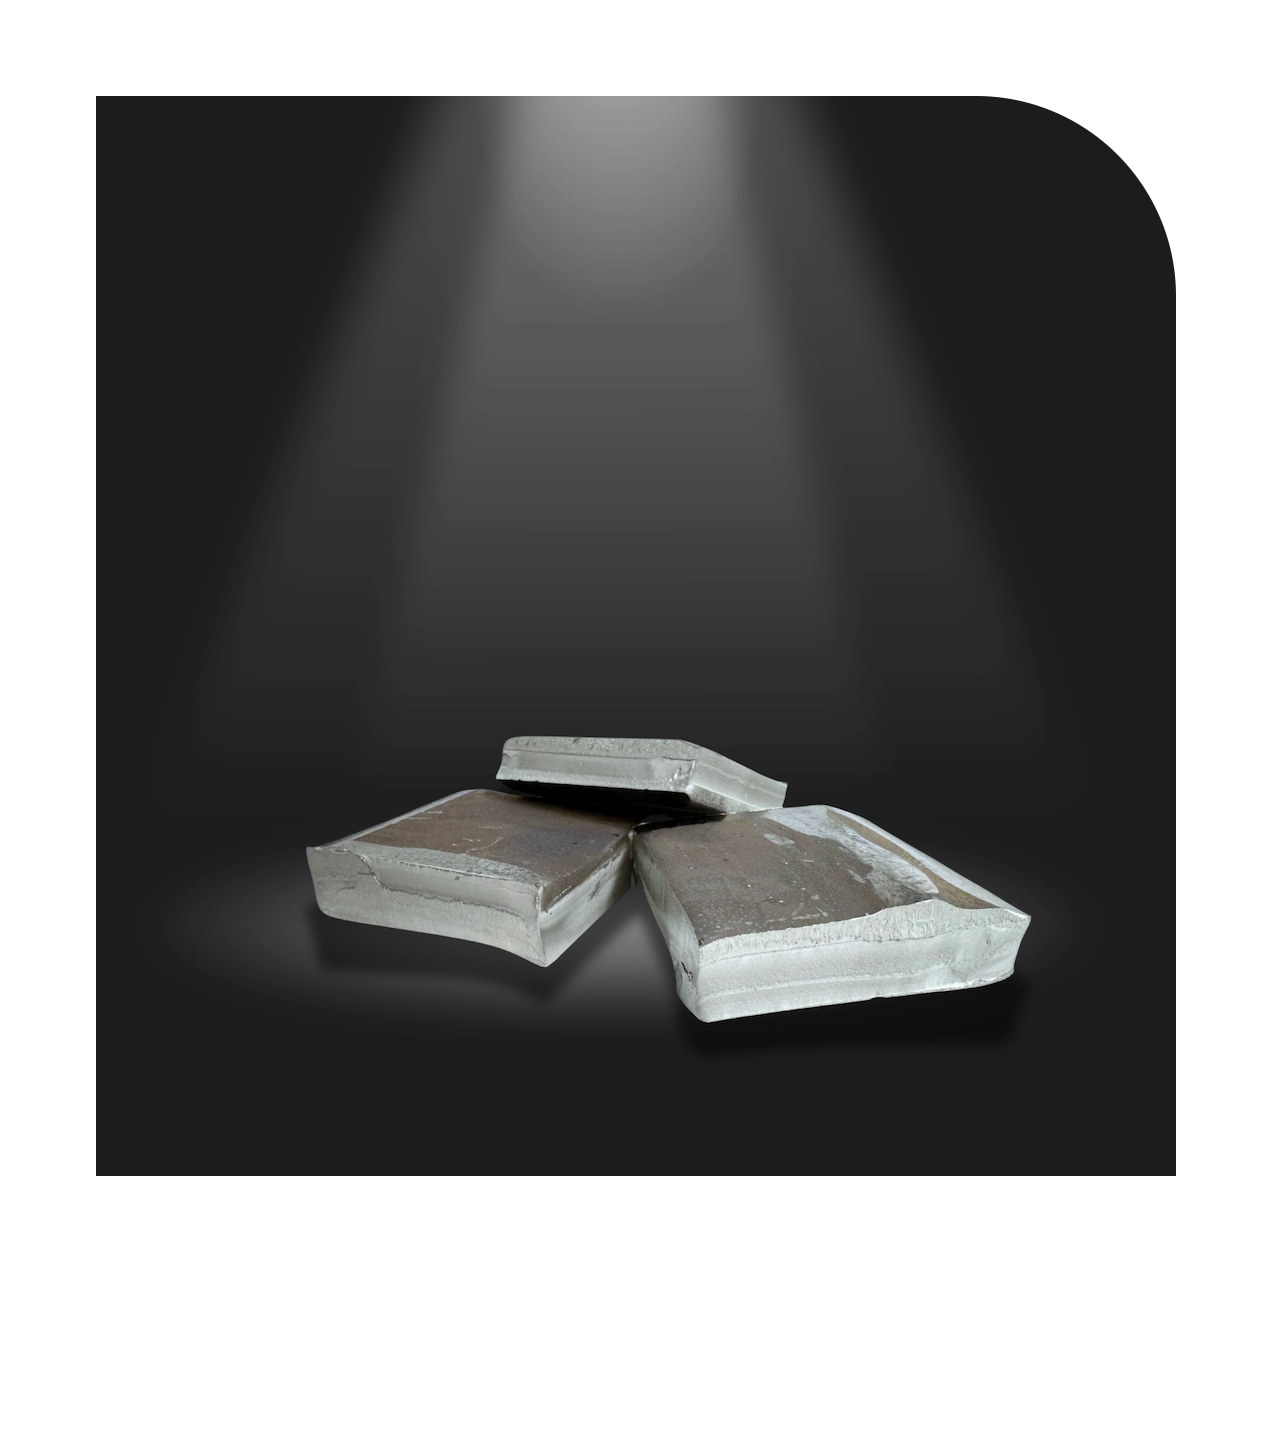 Nickel Squares 4x4, hochreines Nickel mit über 99,98% Reinheit, geeignet für elektrolytische Nickelbäder und Gießereianwendungen. Abmessungen: ca. 100 x 100 mm. Verpackung: 250 kg oder 500 kg Fässer. Auch erhältlich in Größen 1 x 1 und 2 x 2.